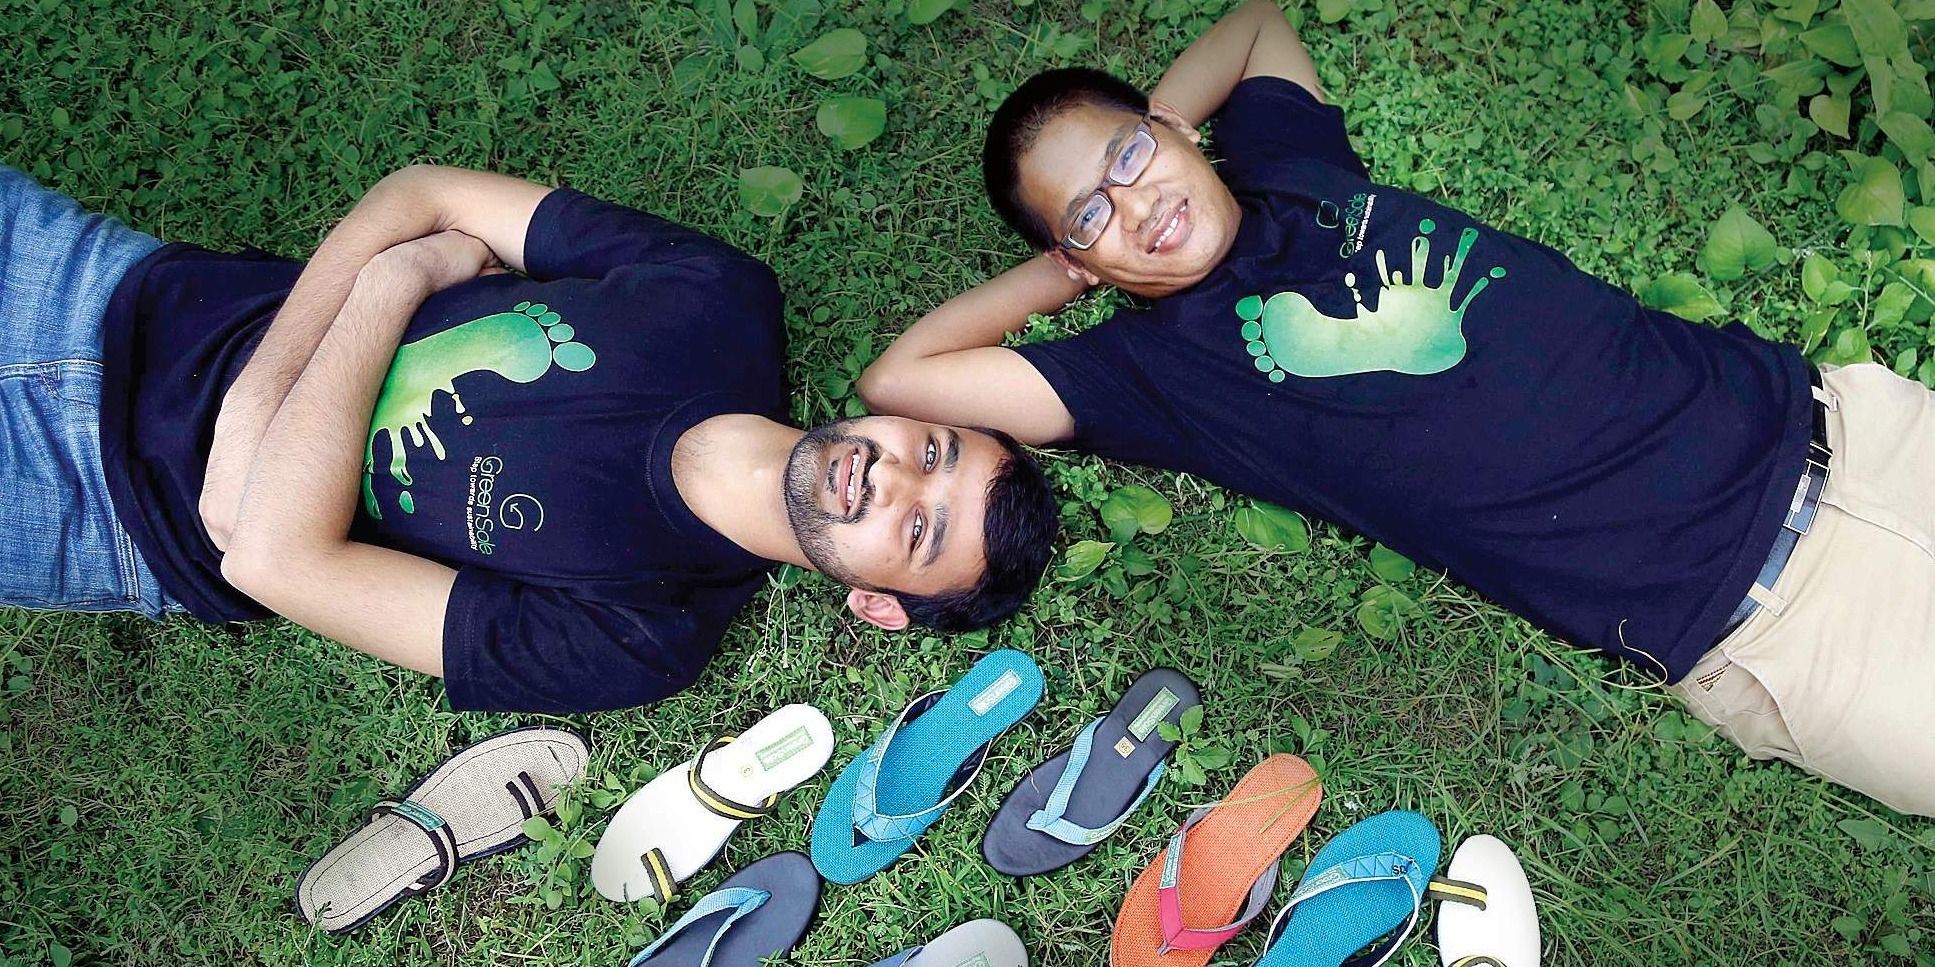 पुराने जूते-चप्पल को नया लुक देकर गरीबों की मदद कर रहे हैं ये दो युवा